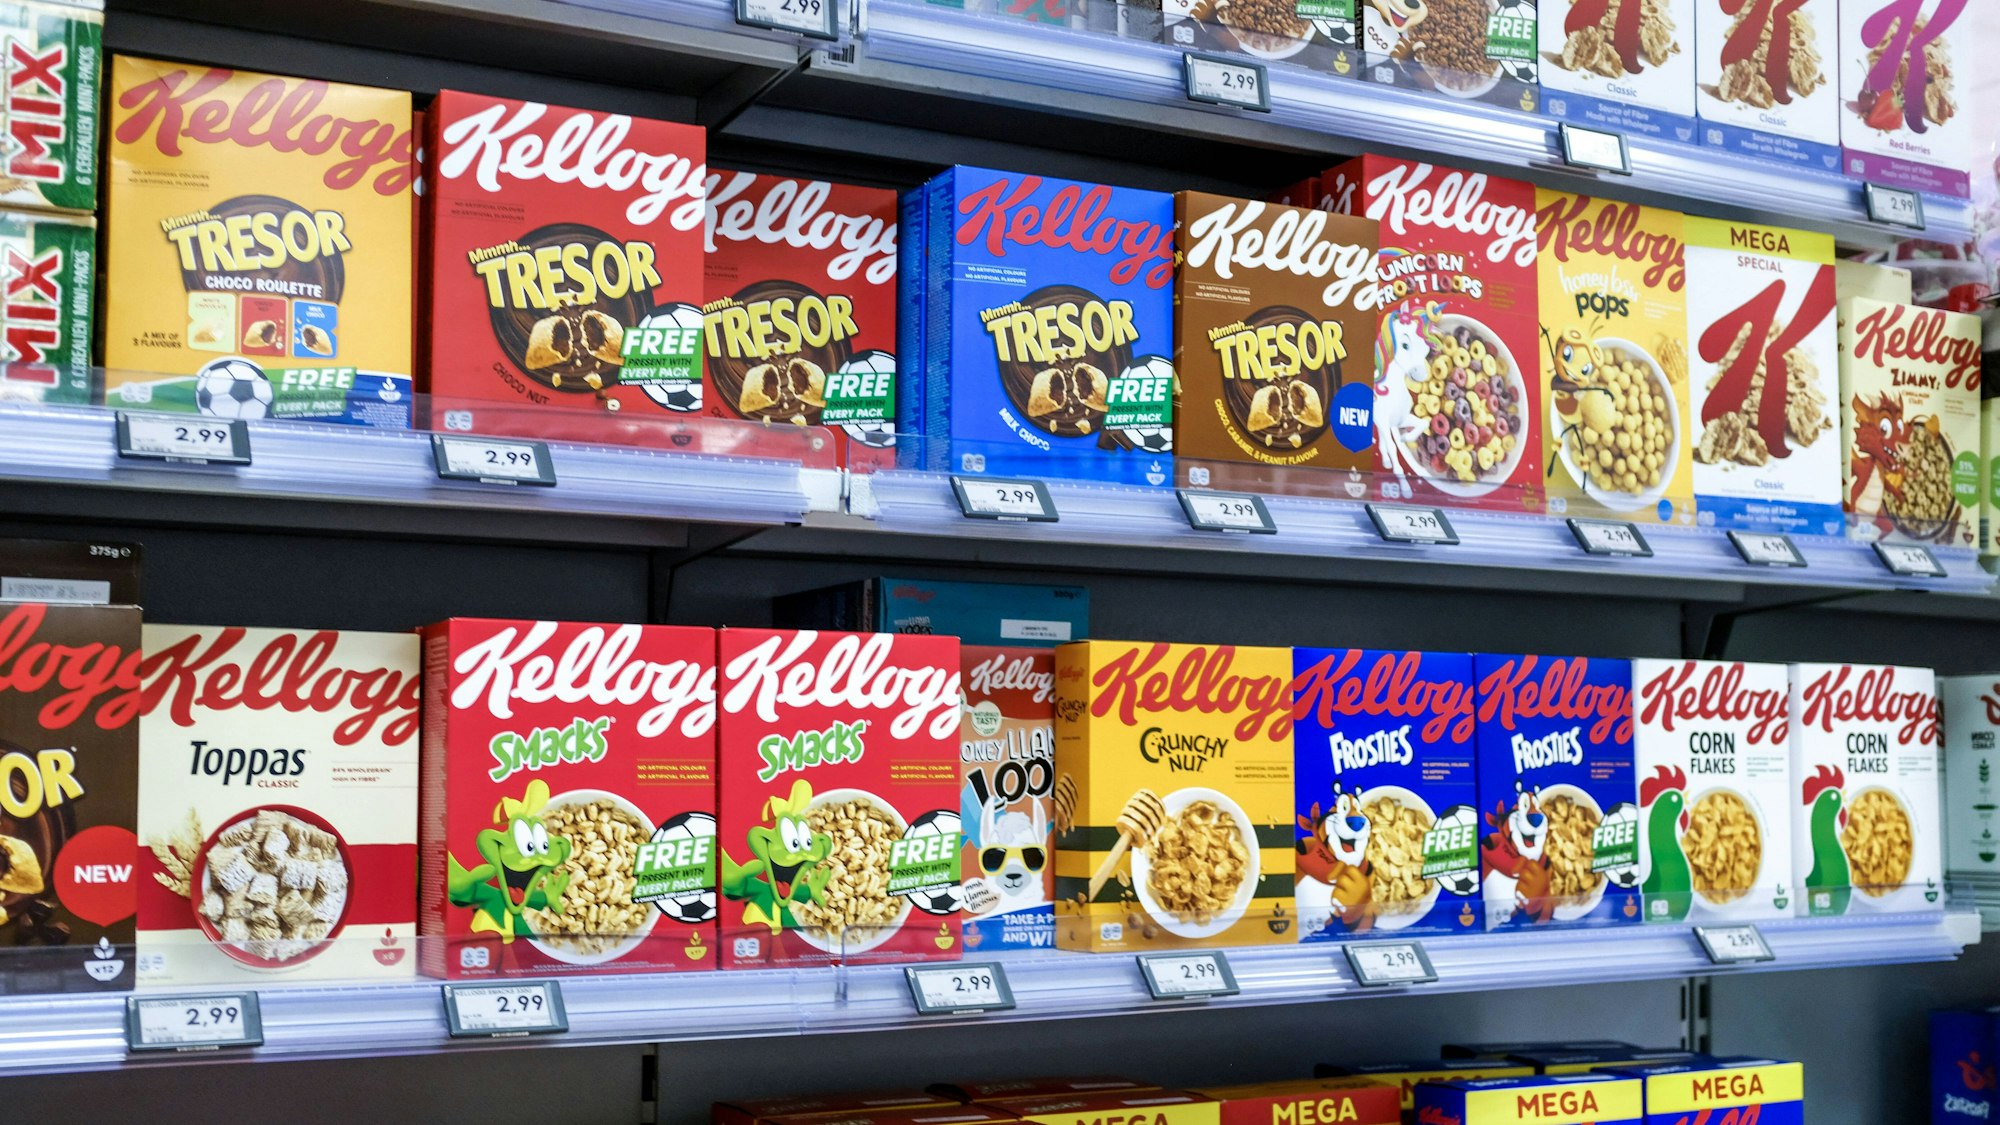 Verschiedene Cornflakes-Produkte von Kellogg's stehen in einem Supermarkt-Regal.